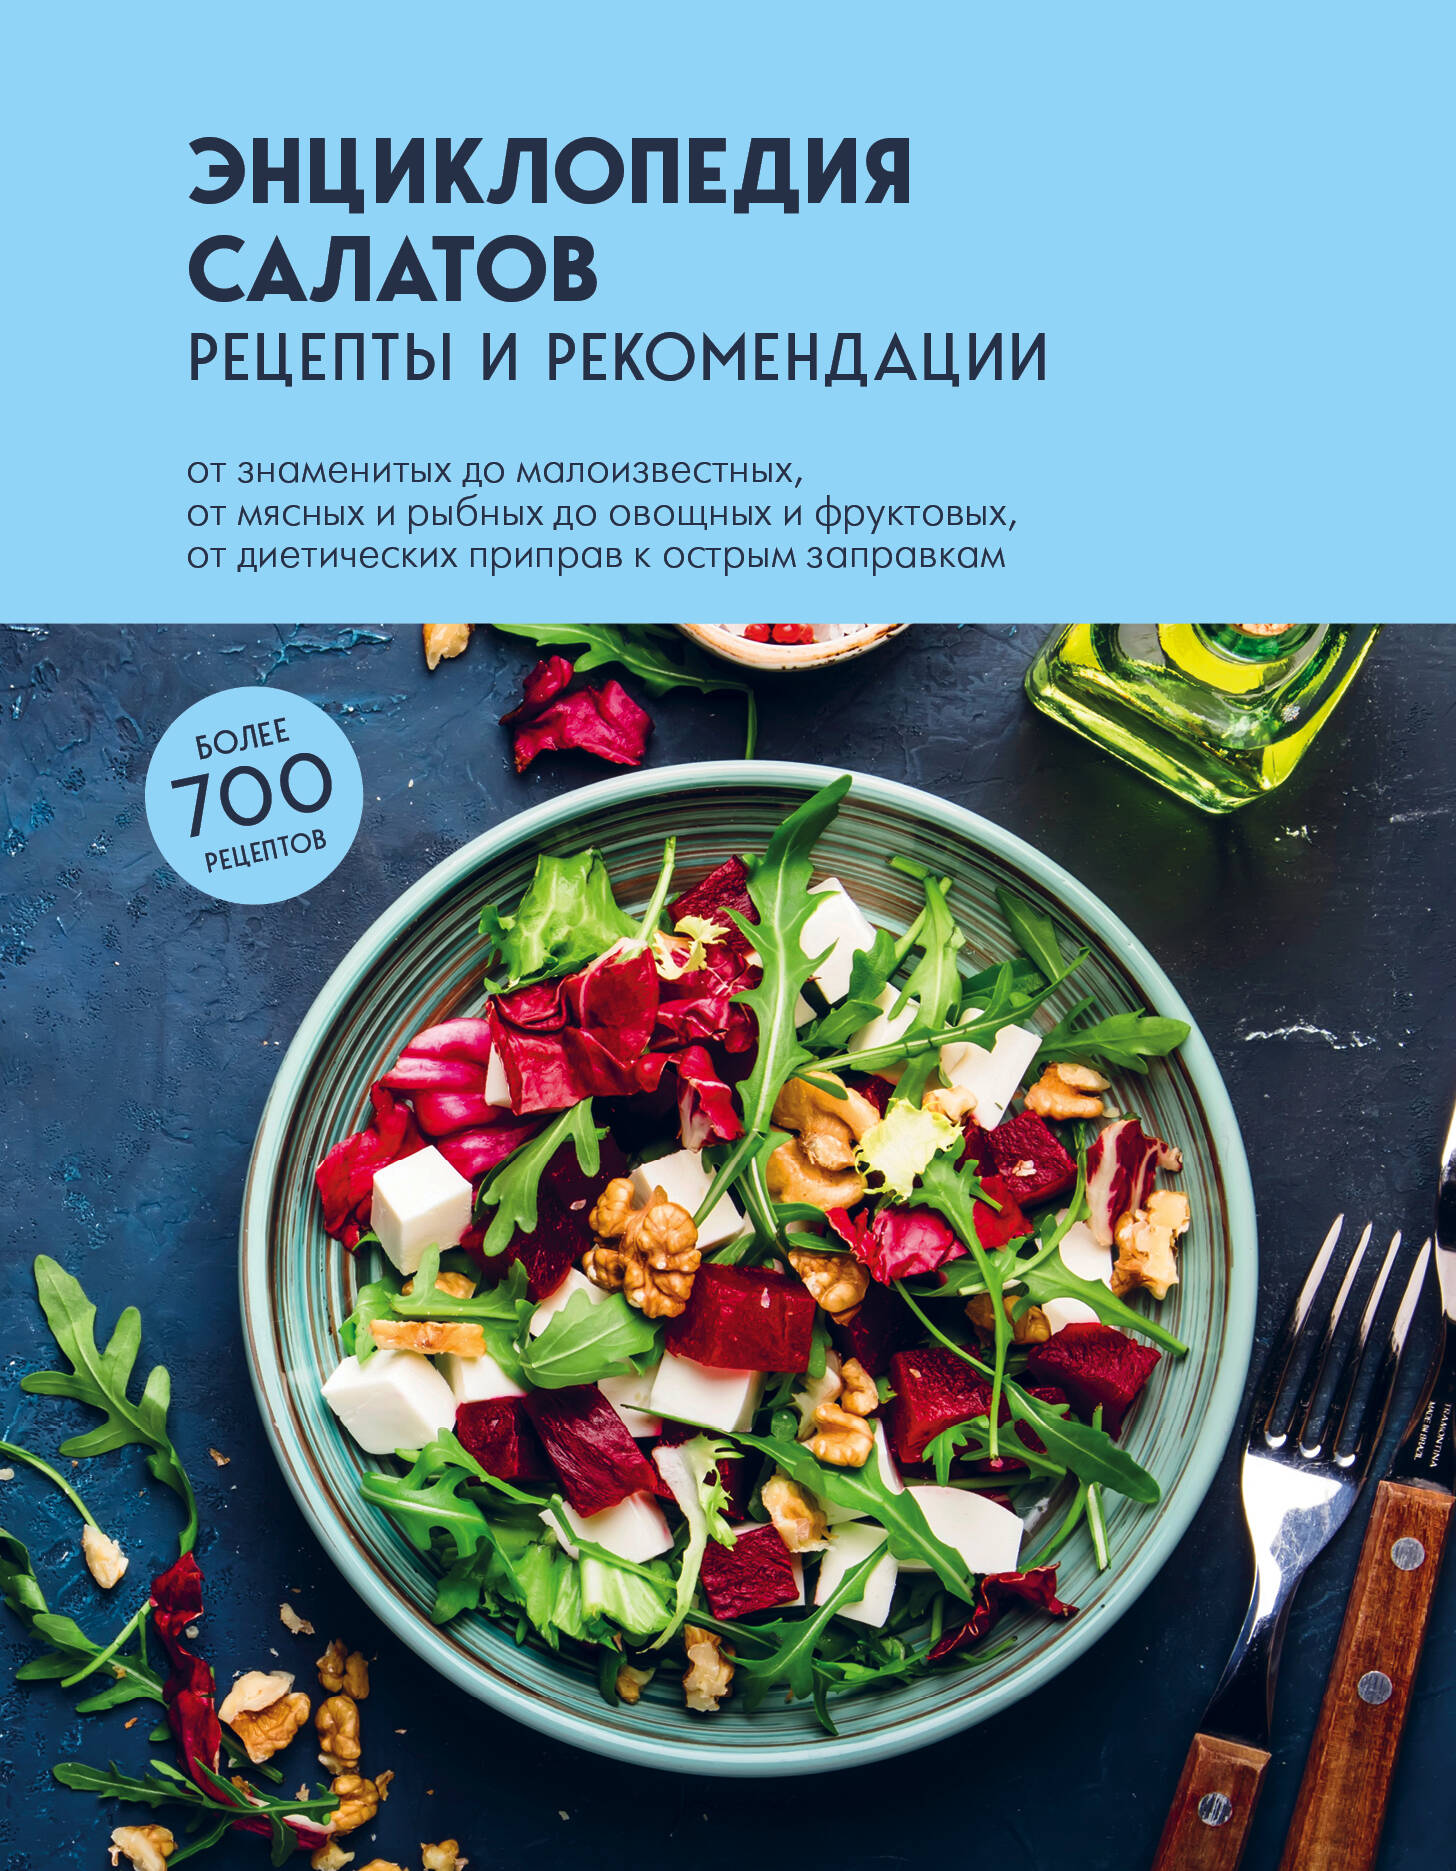 рецепты быстрых салатов Энциклопедия салатов: рецепты и рекомендации